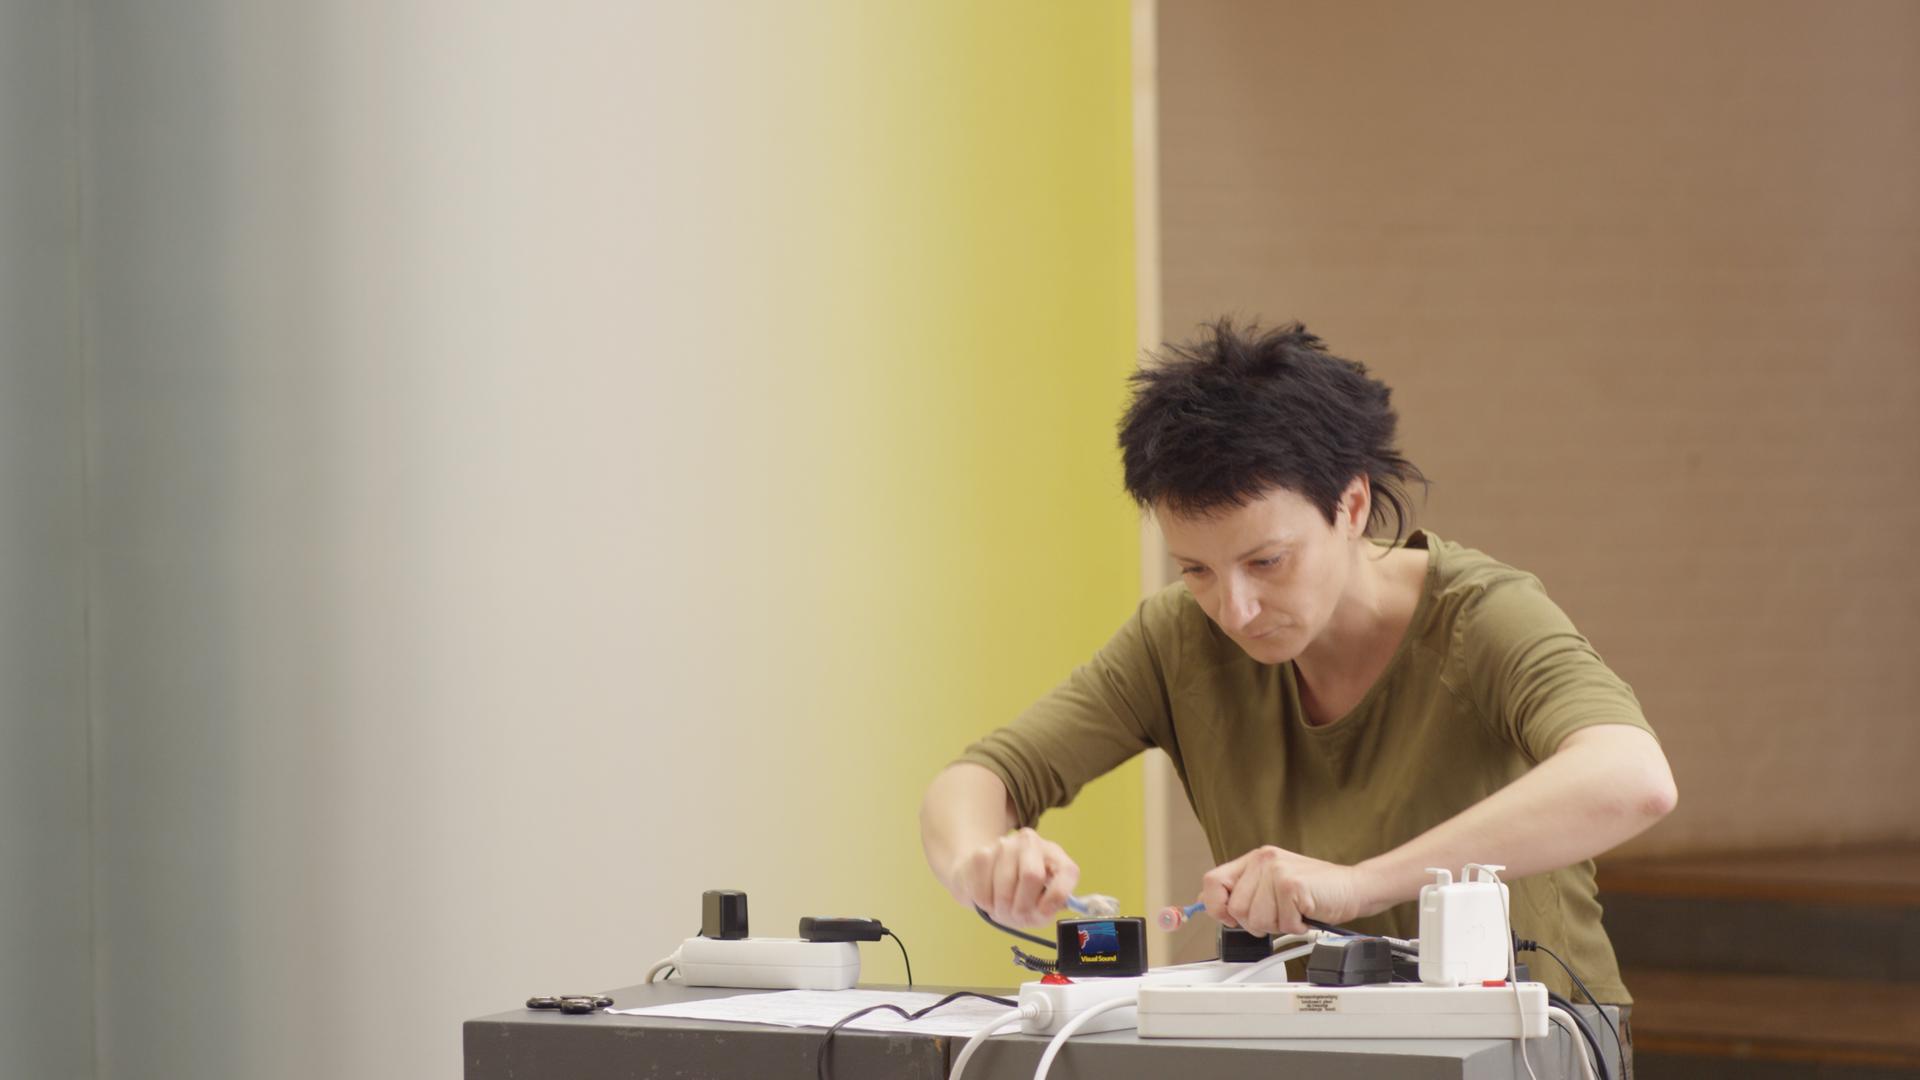 Eine Frau mit kurzen Haaren steht konzentriert an einem Tisch, wobei sie mit Magnetresonanz-Instrumenten hantiert.